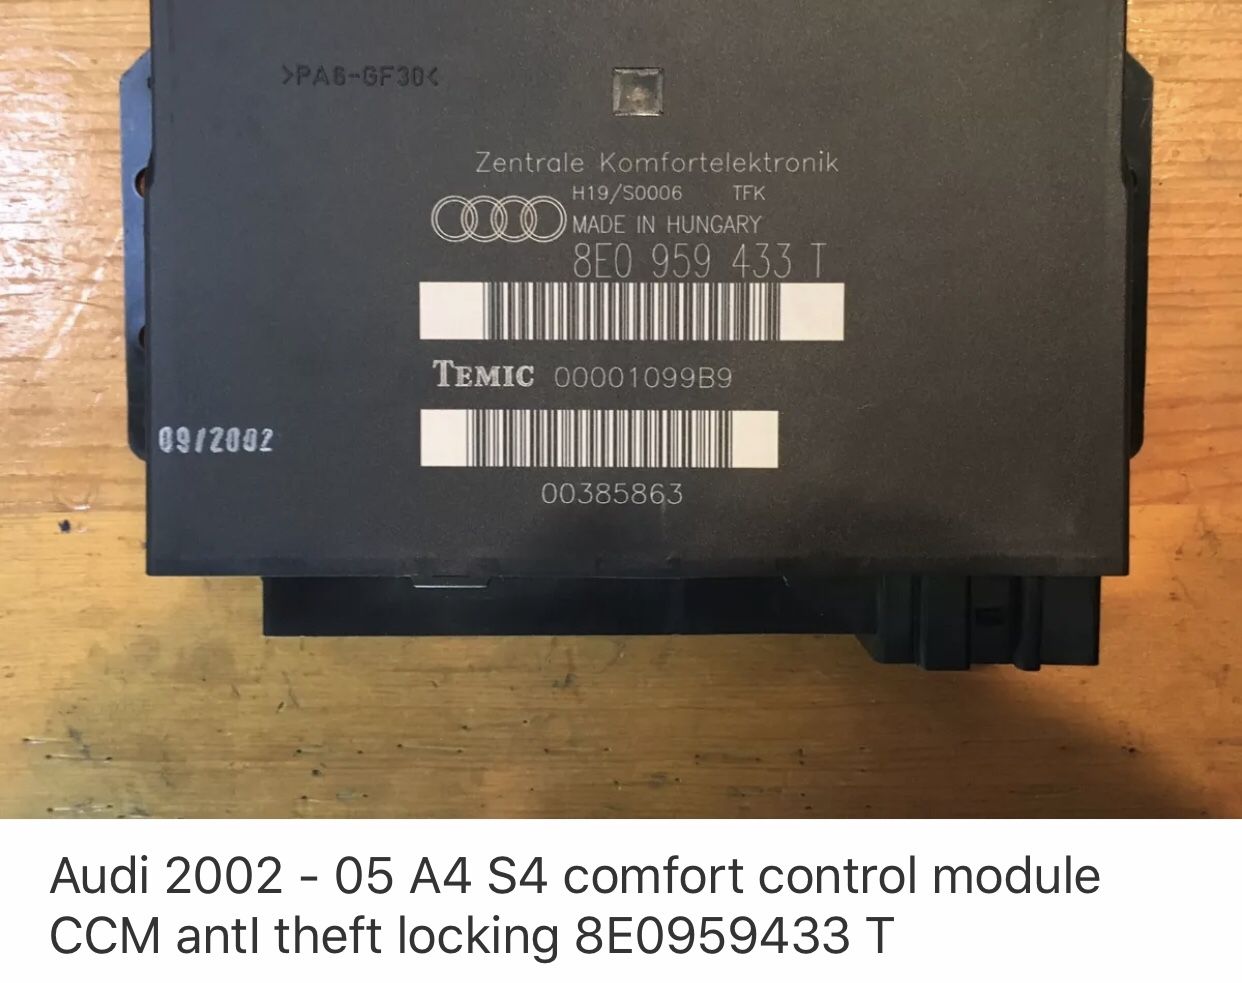 Audi 02-05 A4 S4 comfort control module